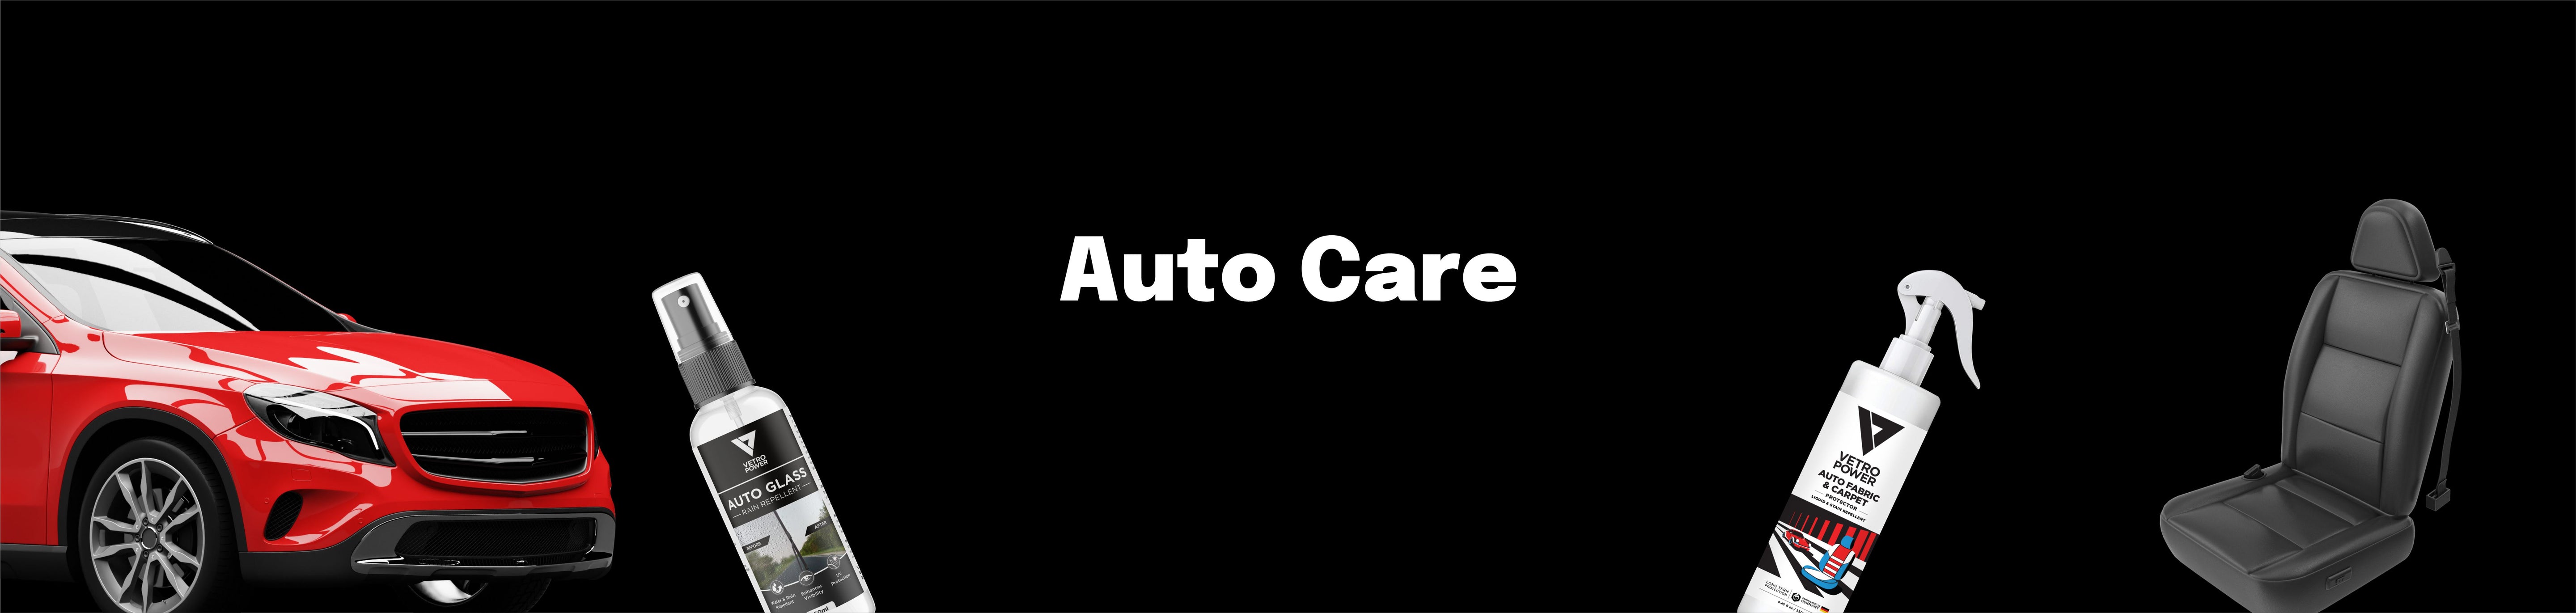 Auto Care